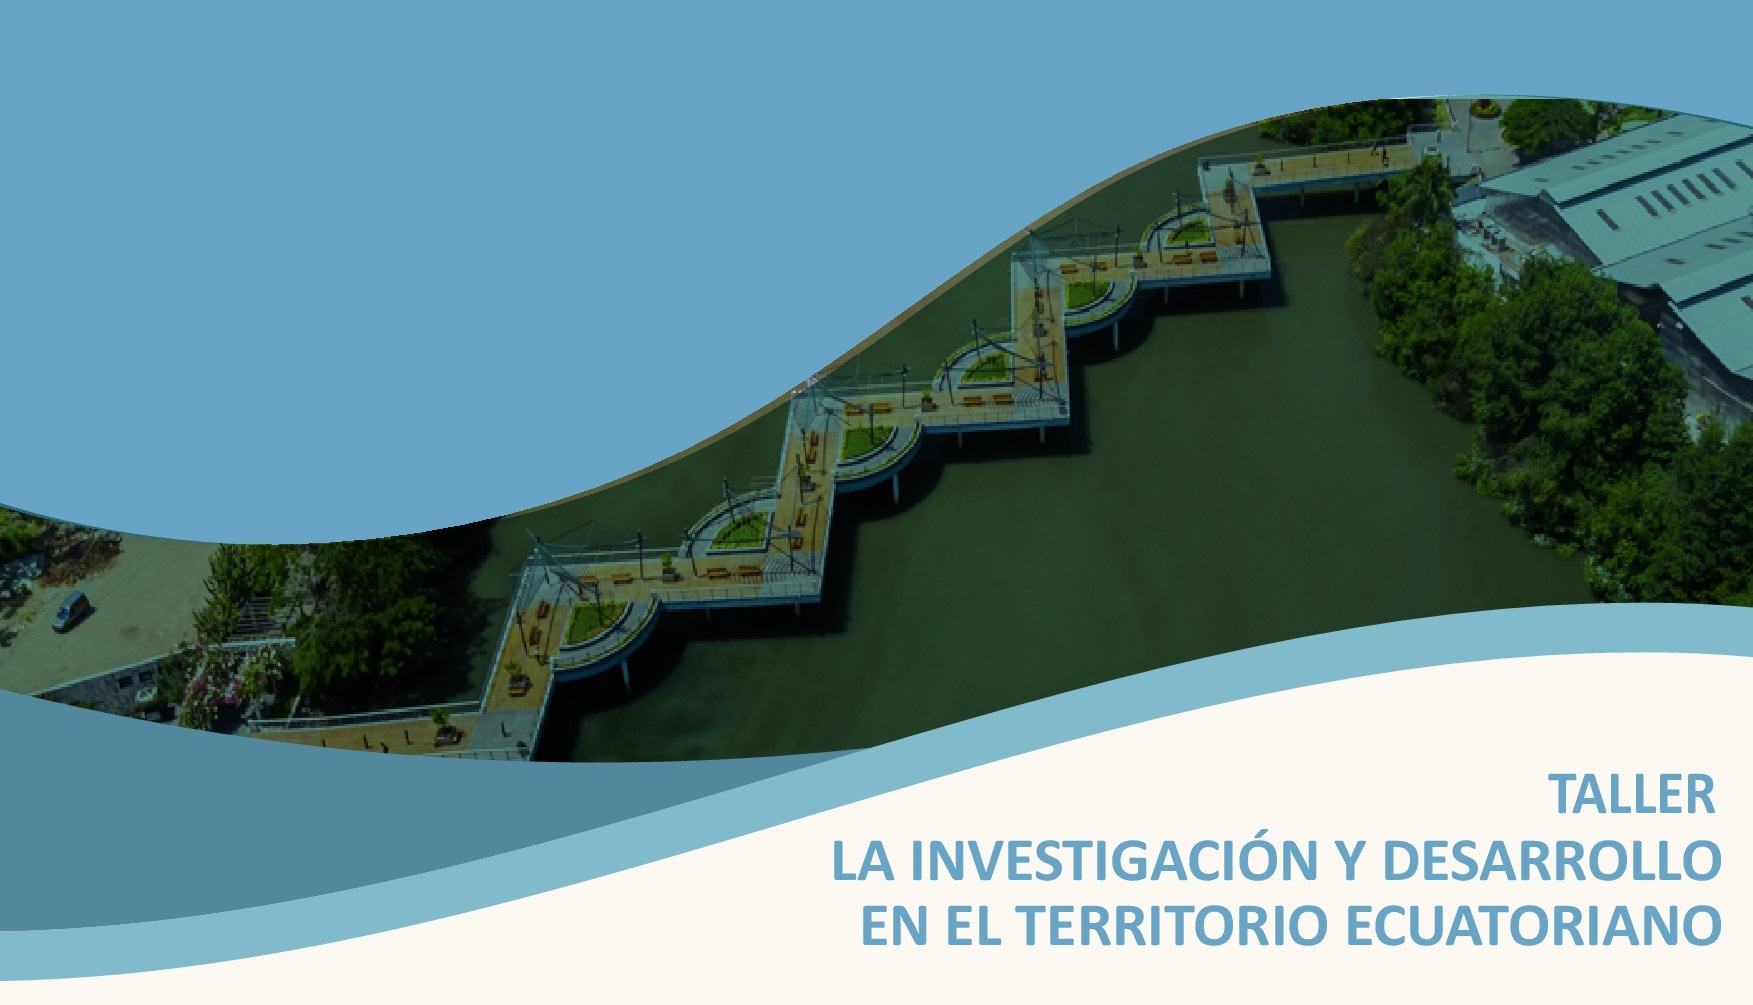 Taller La Investigación y Desarrollo de la Universidad de Guayaquil en el Territorio Euatoriano